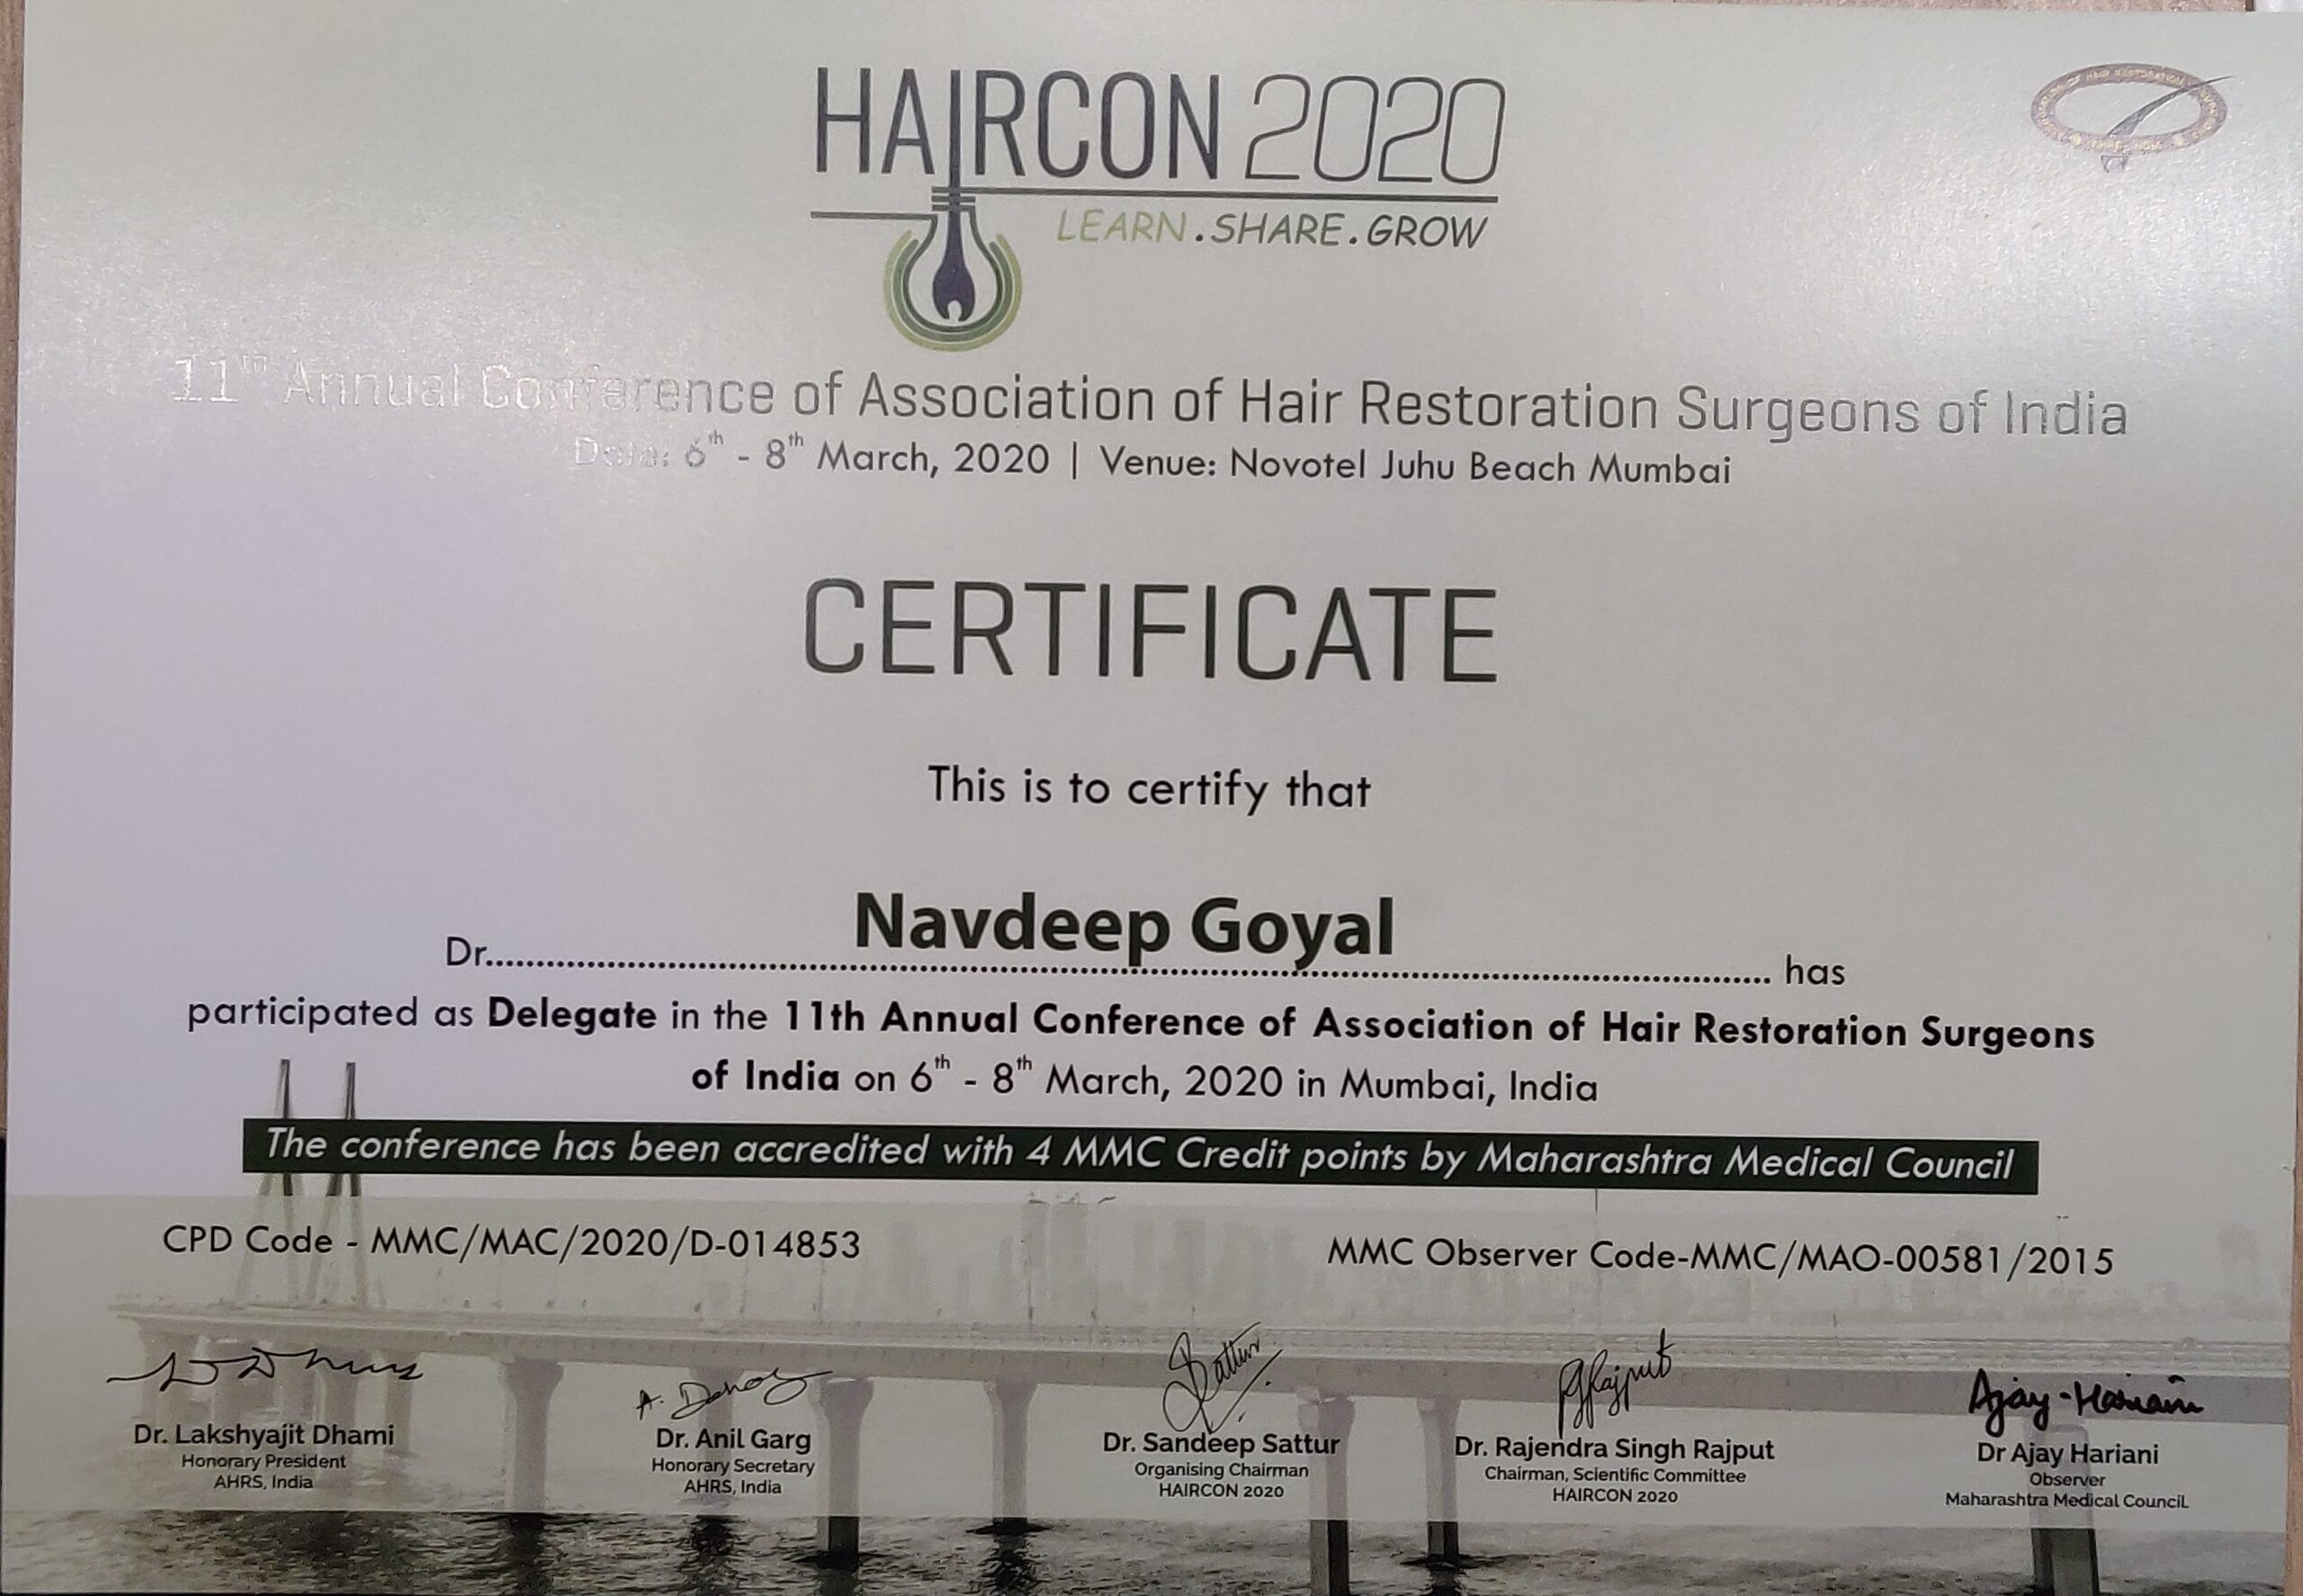 HAIRCON 2020 at Hotel Novotel, Juhu Beach, Mumbai, India.